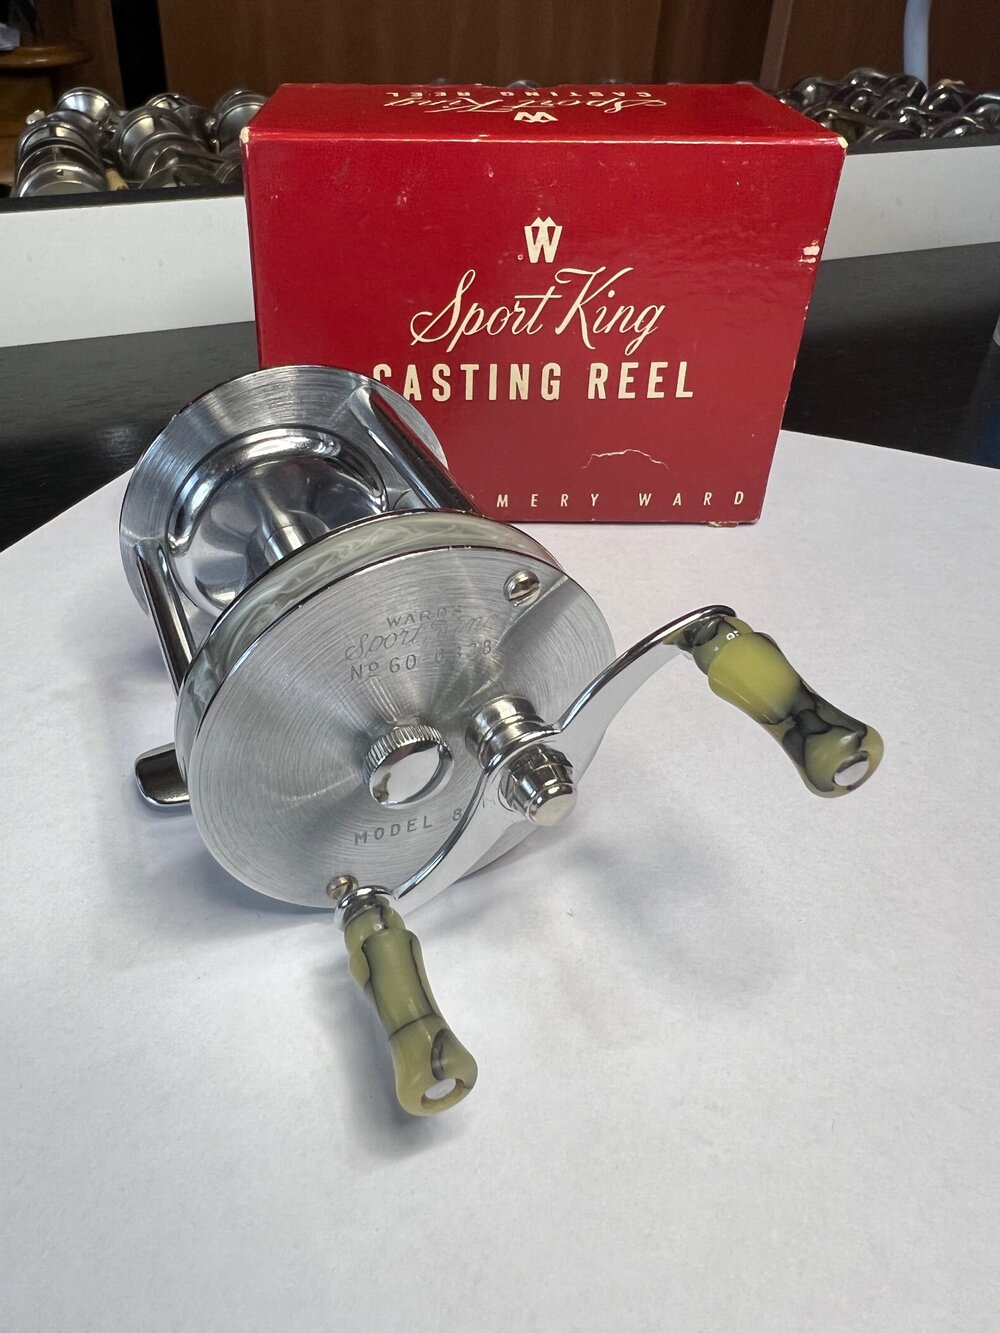 Parker Mott on Instagram: The new Custom Lite Spinning reel has